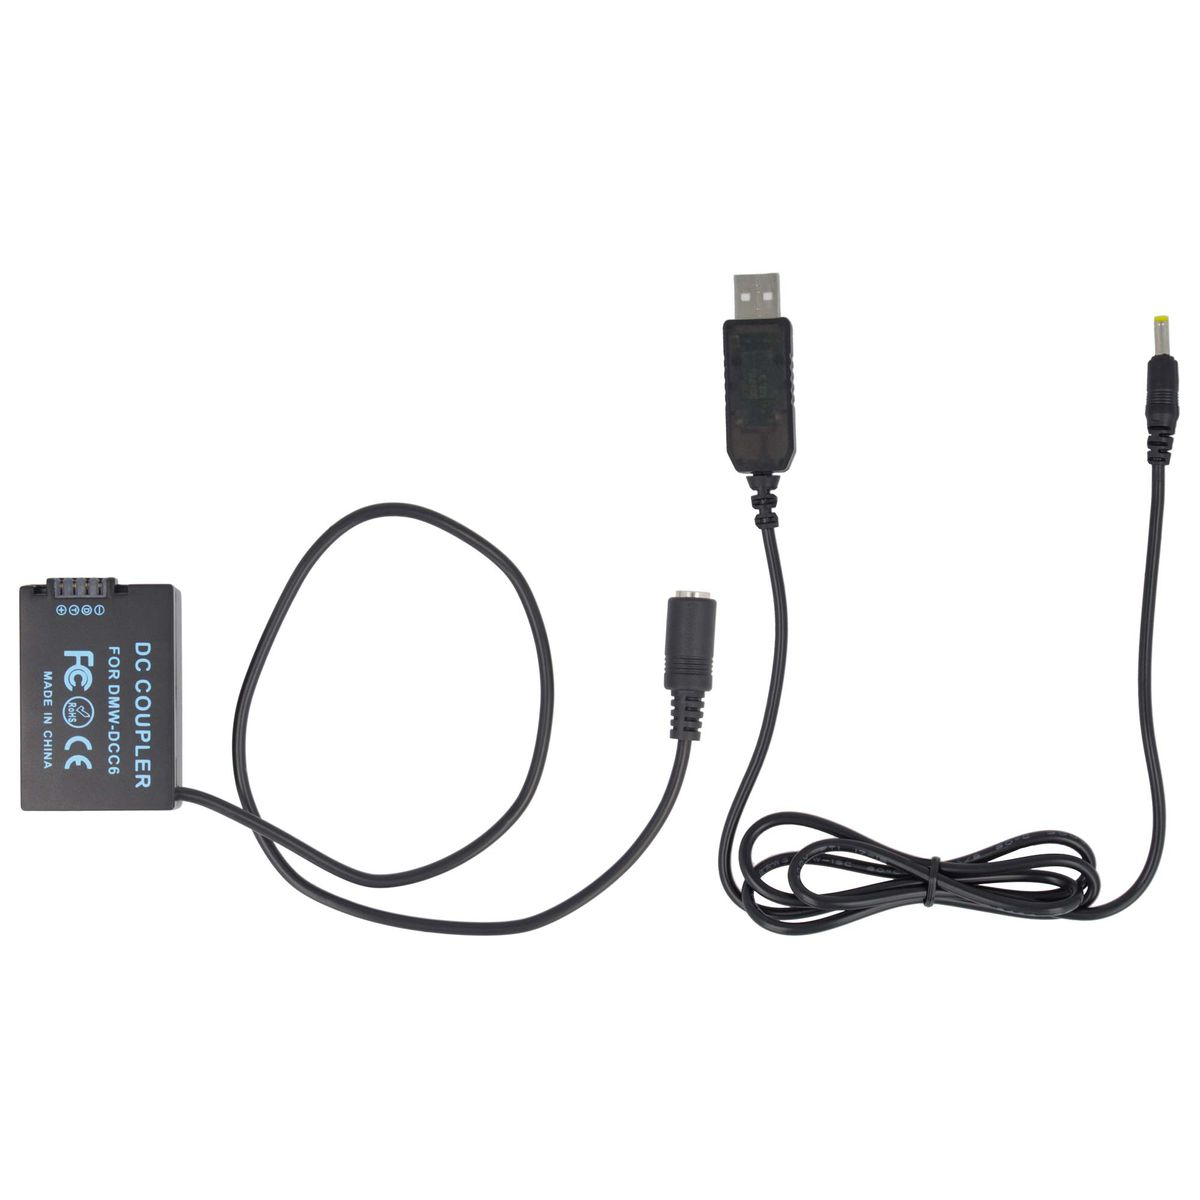 keine Adapter Panasonic Panasonic, AKKU-KING kompatibel Angabe + Kuppler DCC6 mit Ladegerät USB